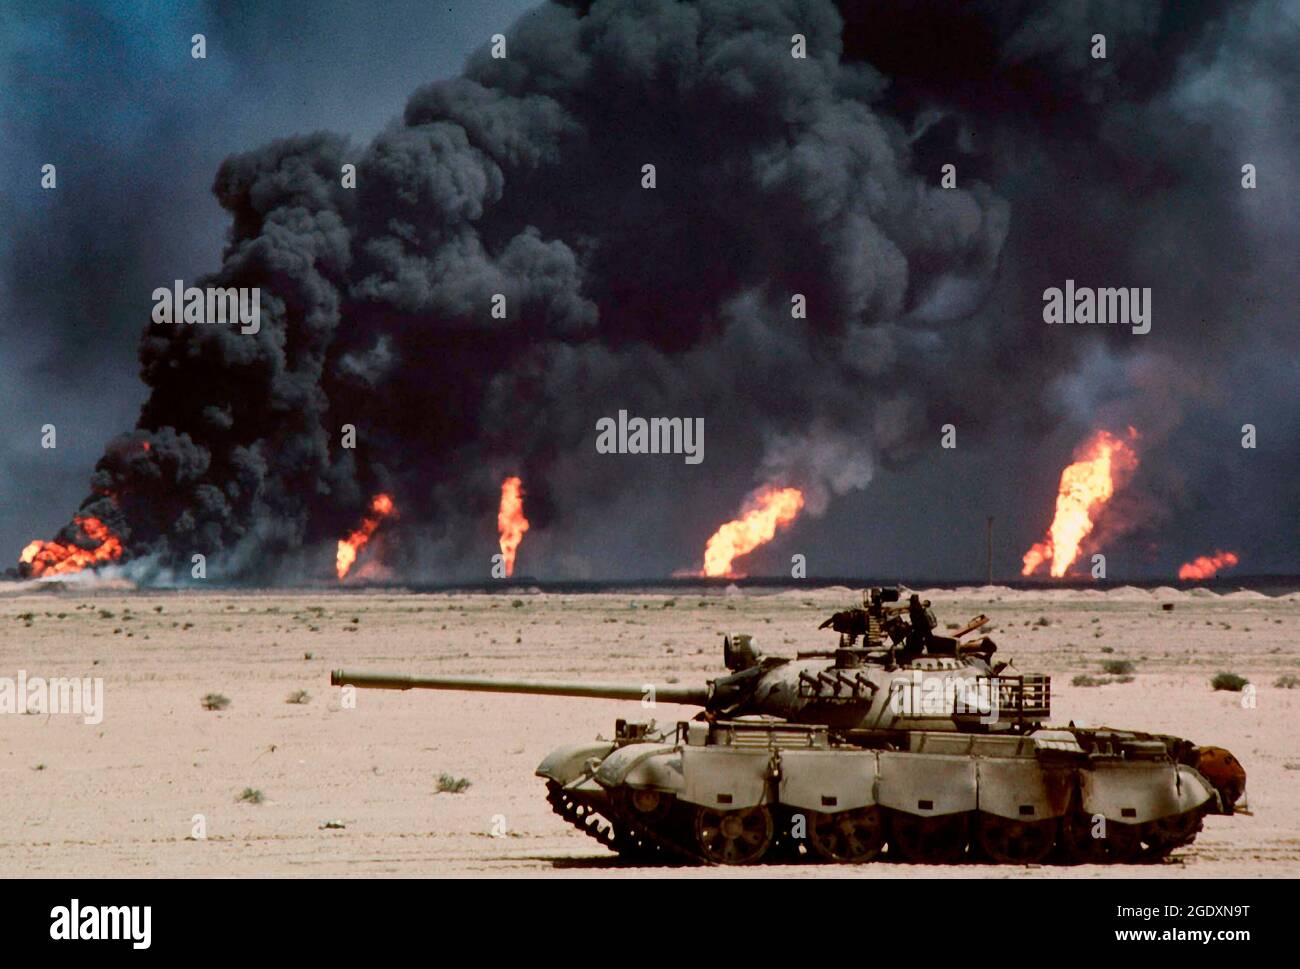 KUWAIT - Februar / März 1991 - ein verlassene russische T-62-Panzer in der Wüste vor brennenden Ölquellen wurden Bilder wie diese zur Ikone Stockfoto